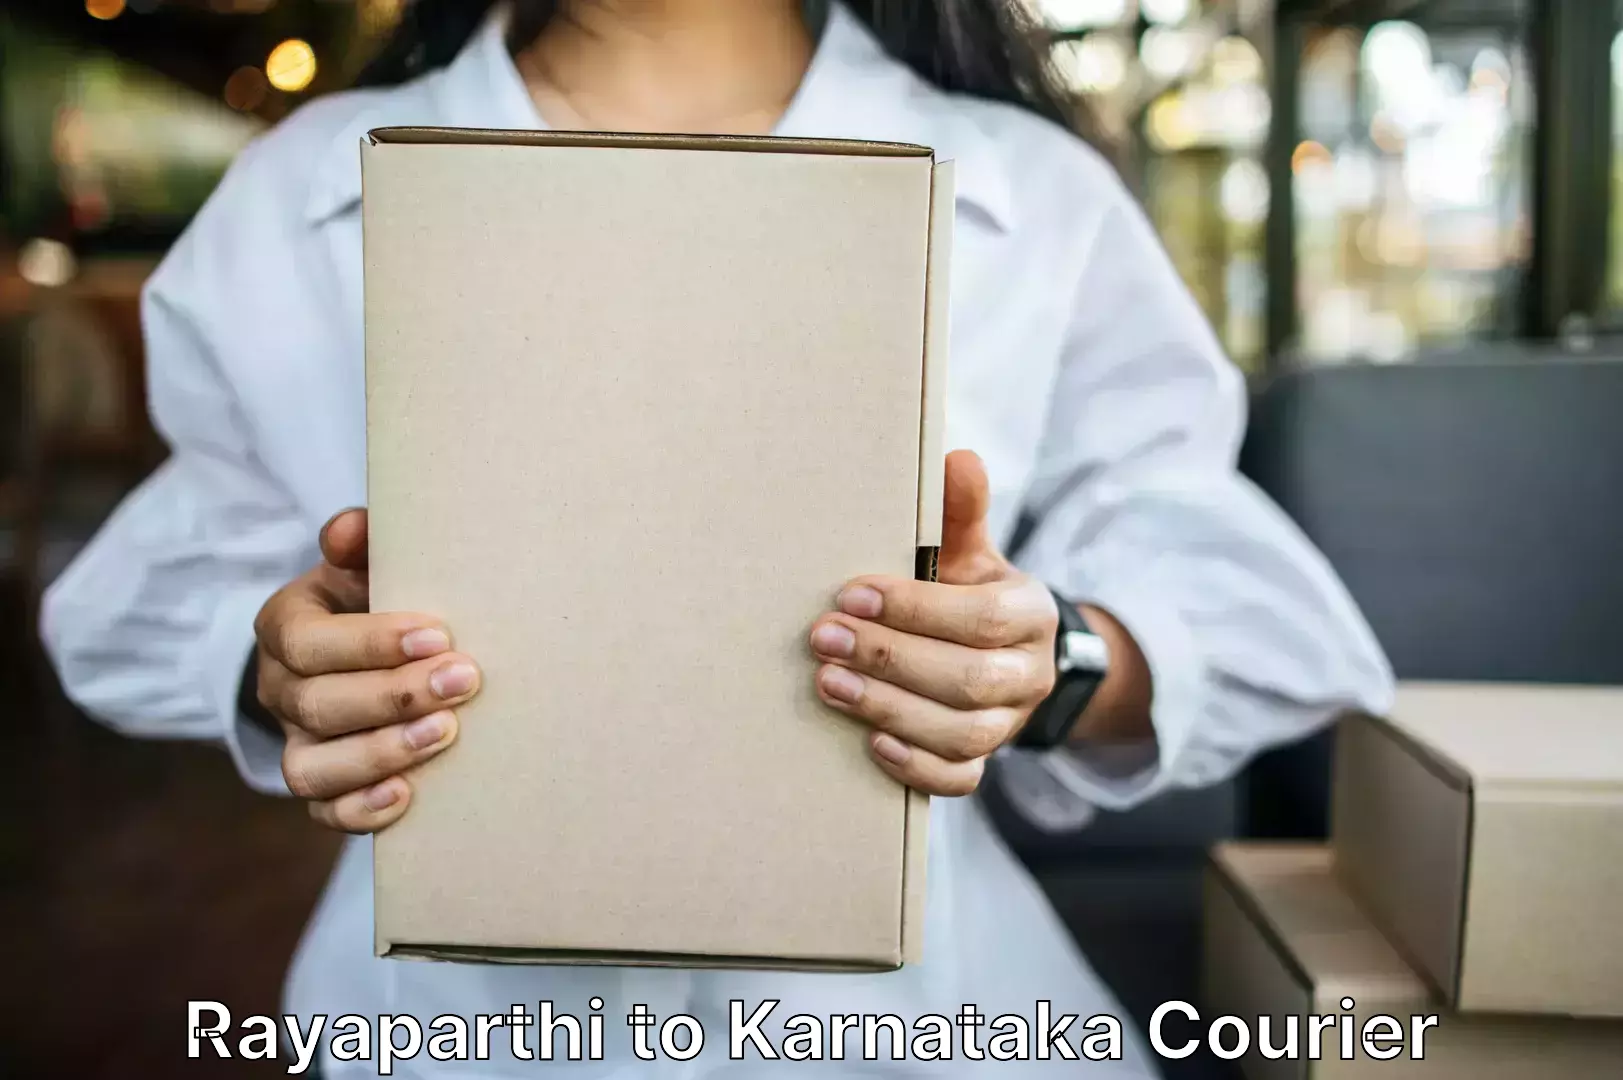 Efficient baggage courier system Rayaparthi to Karnataka